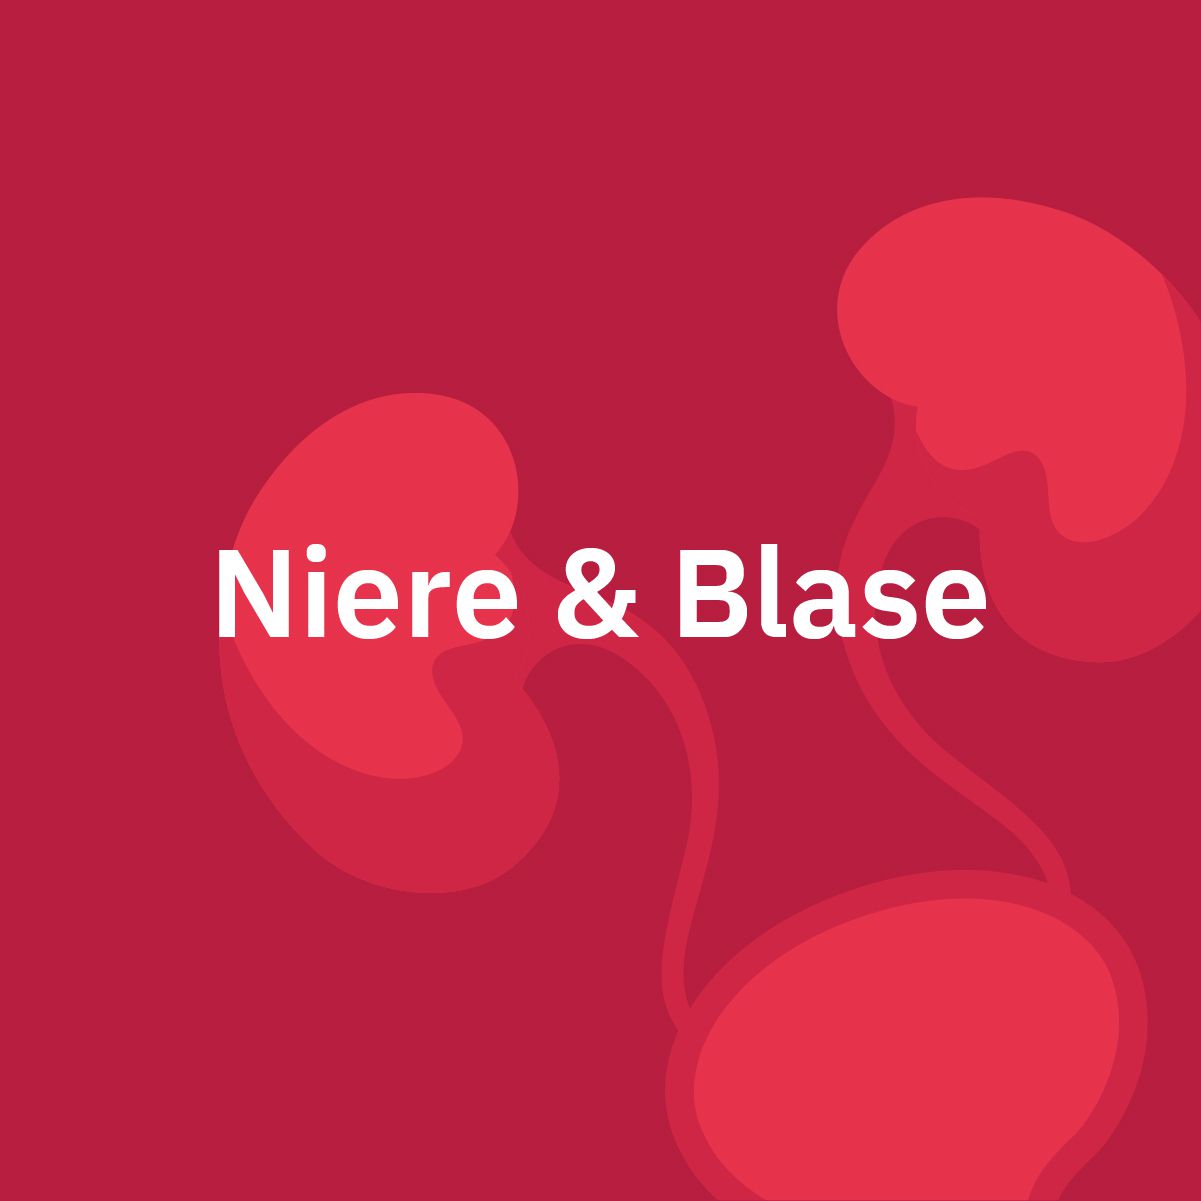 Niere & Blase